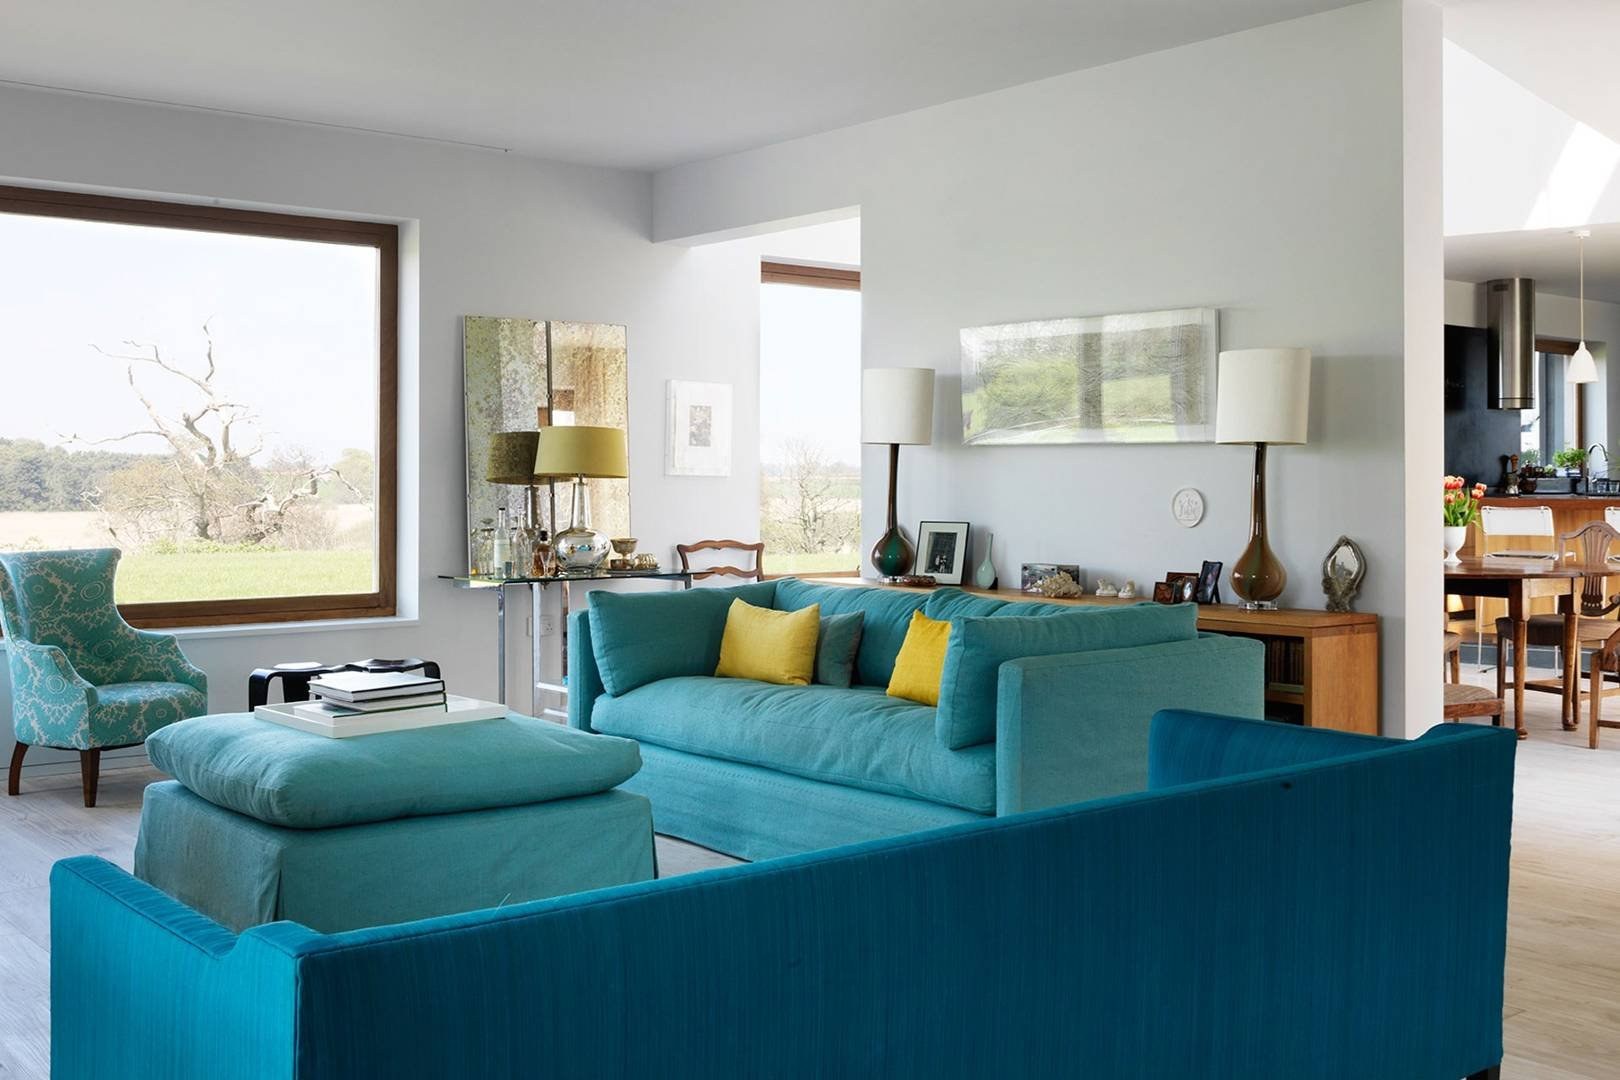 Бирюзовый диван в интерьере [60+ фото] идеи для дома ❤ 2021